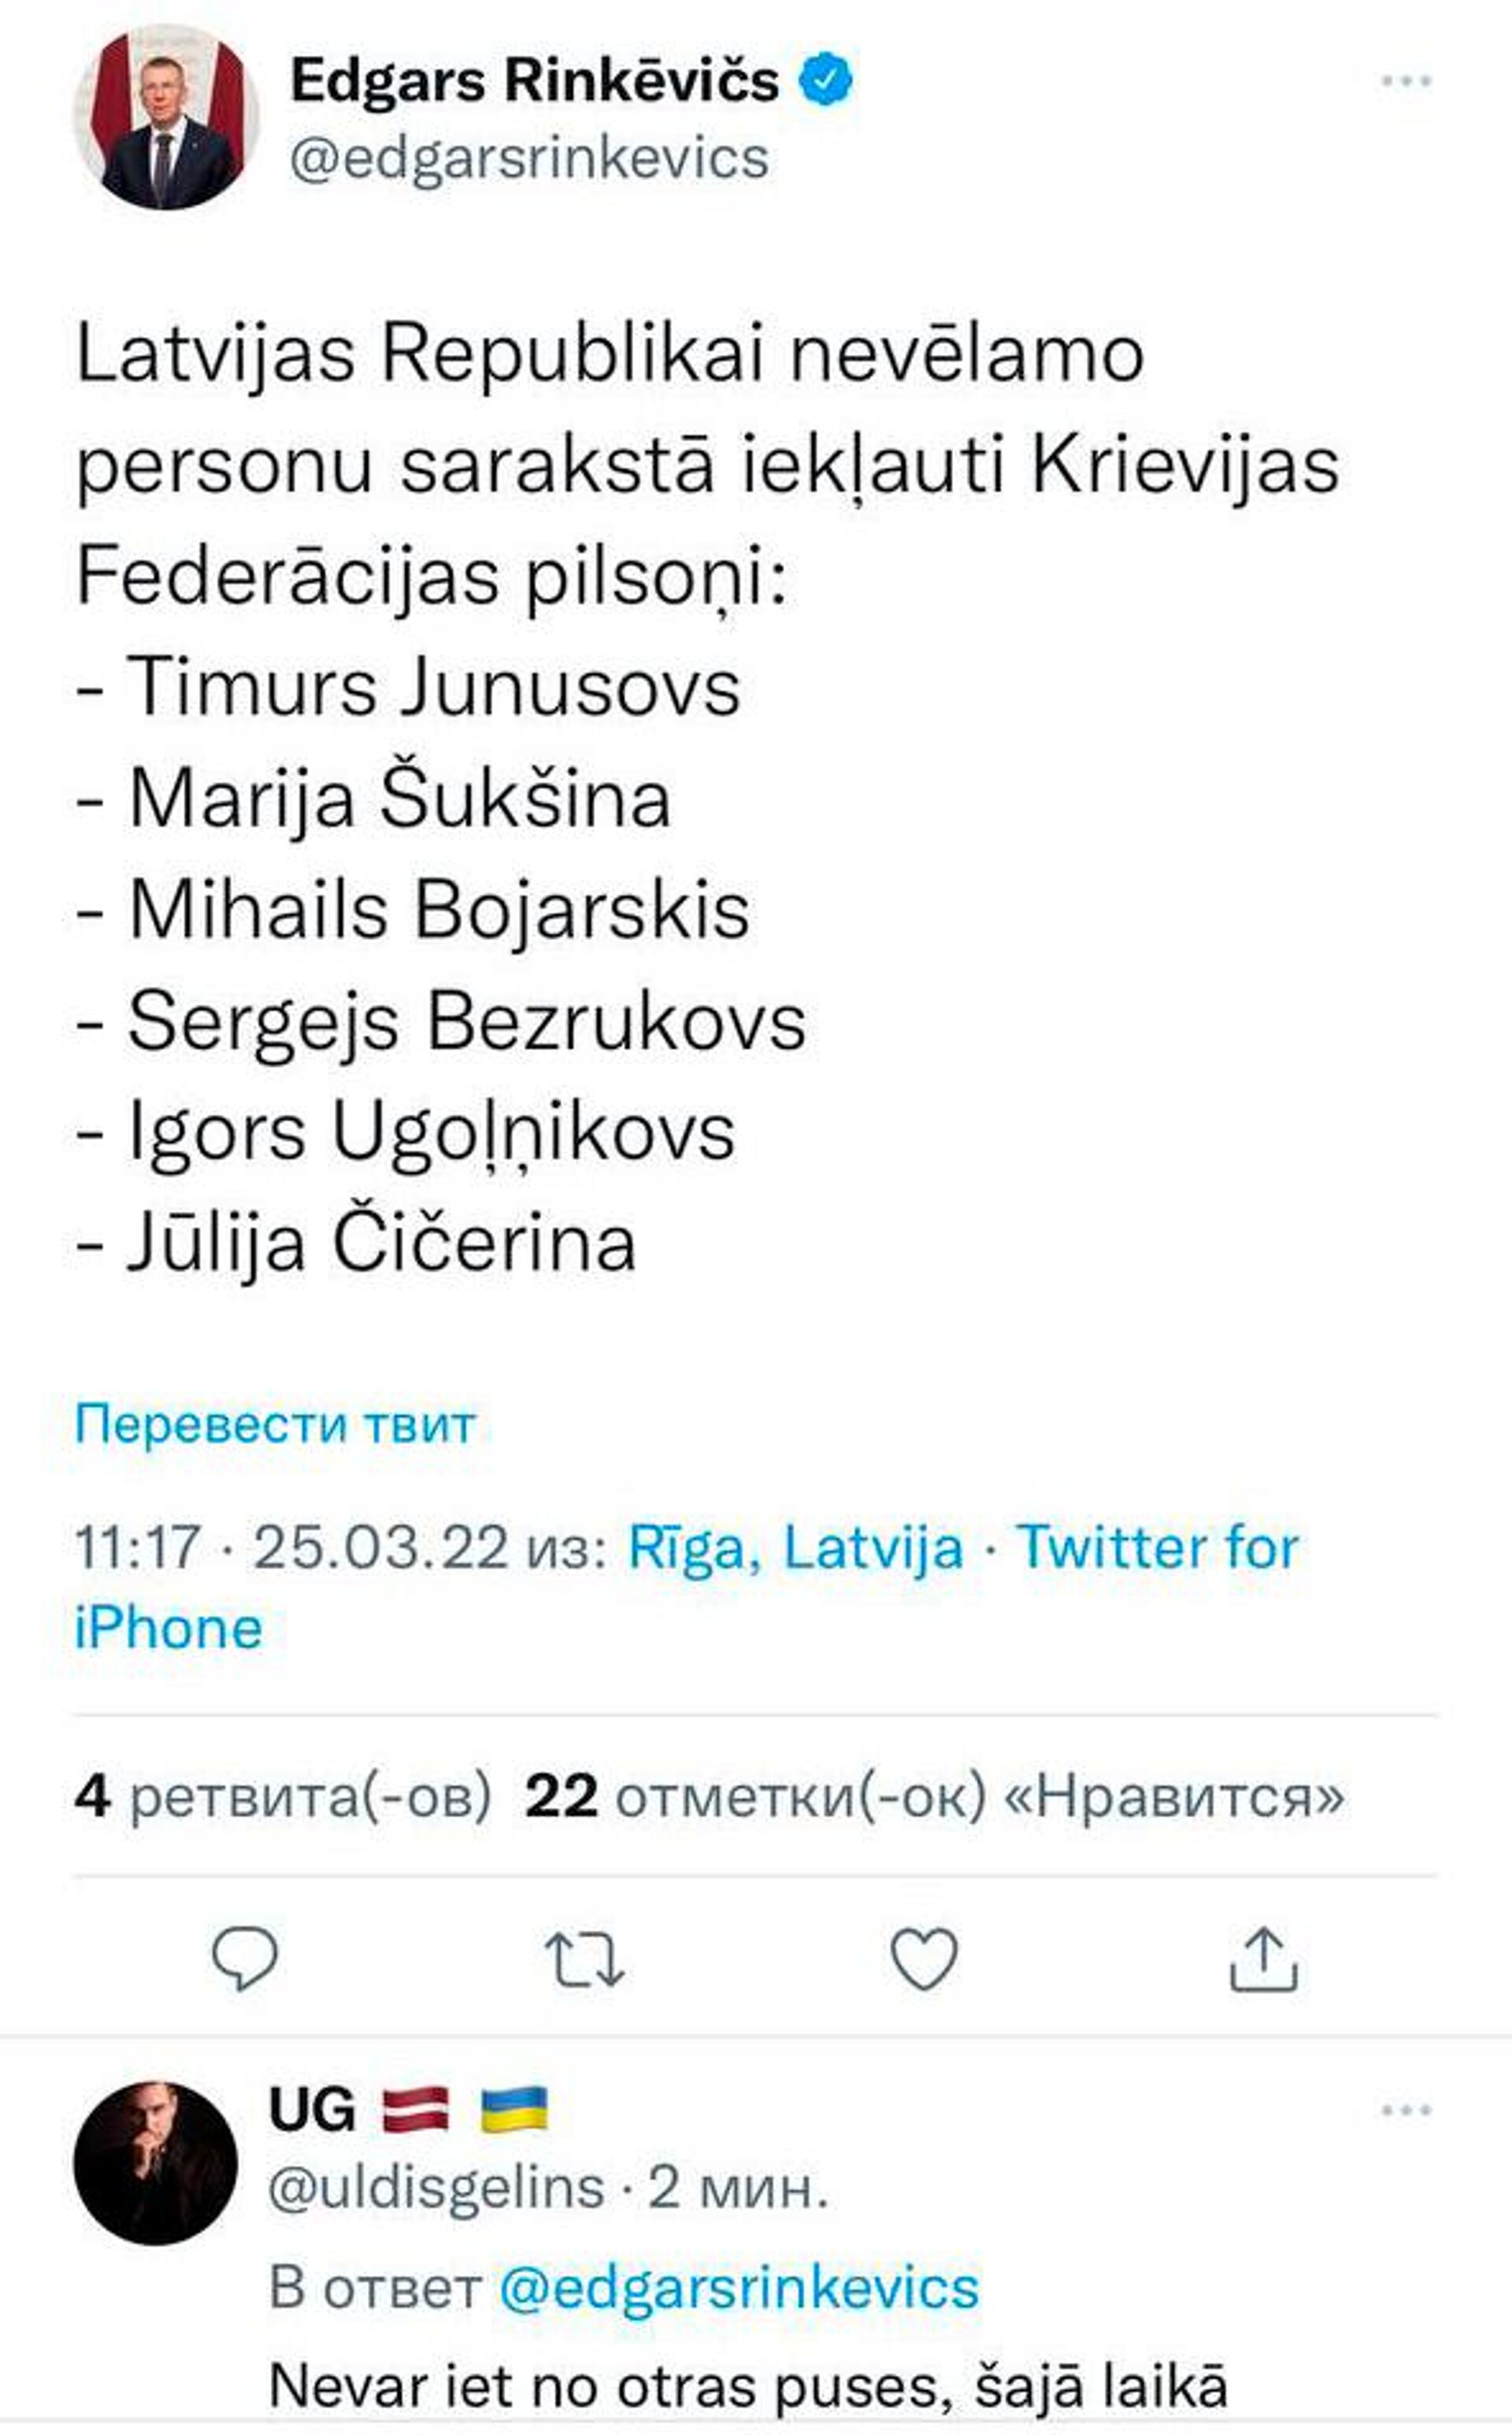 Скриншот поста в Twitter  - Sputnik Латвия, 1920, 25.03.2022